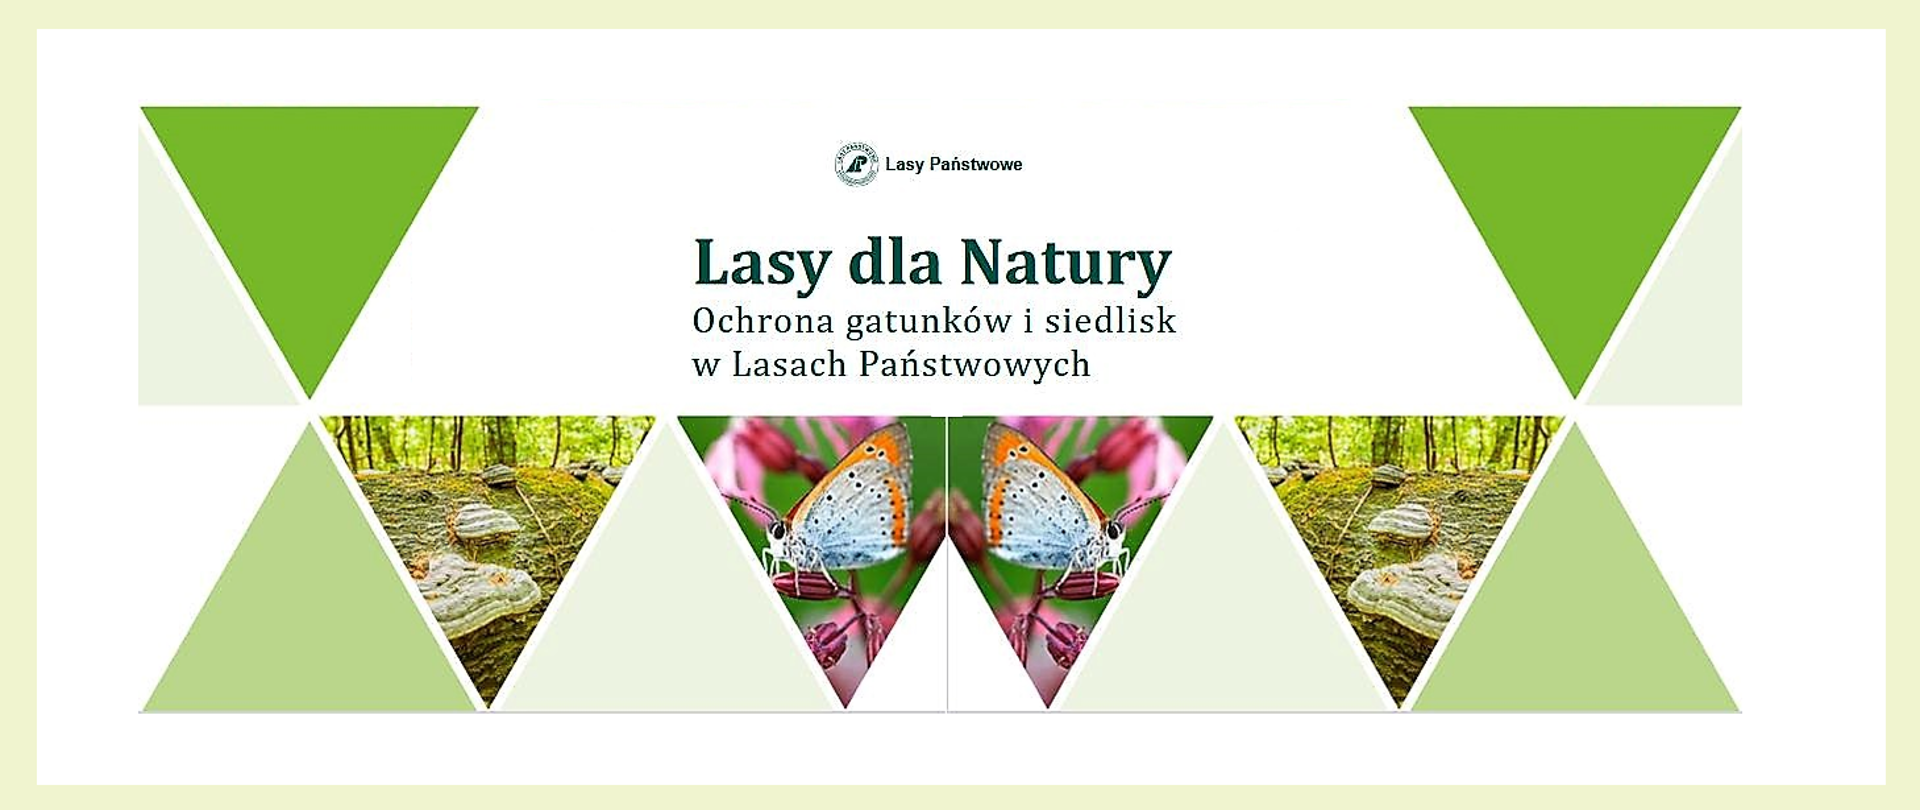 Publikacja „Lasy dla Natury” promująca działania Lasów Państwowych na rzecz ochrony gatunków i siedlisk na obszarach Natura 2000, które są wykonywane w ramach „Kompleksowego projektu ochrony gatunków i siedlisk przyrodniczych na obszarach zarządzanych przez PGL Lasy Państwowe”